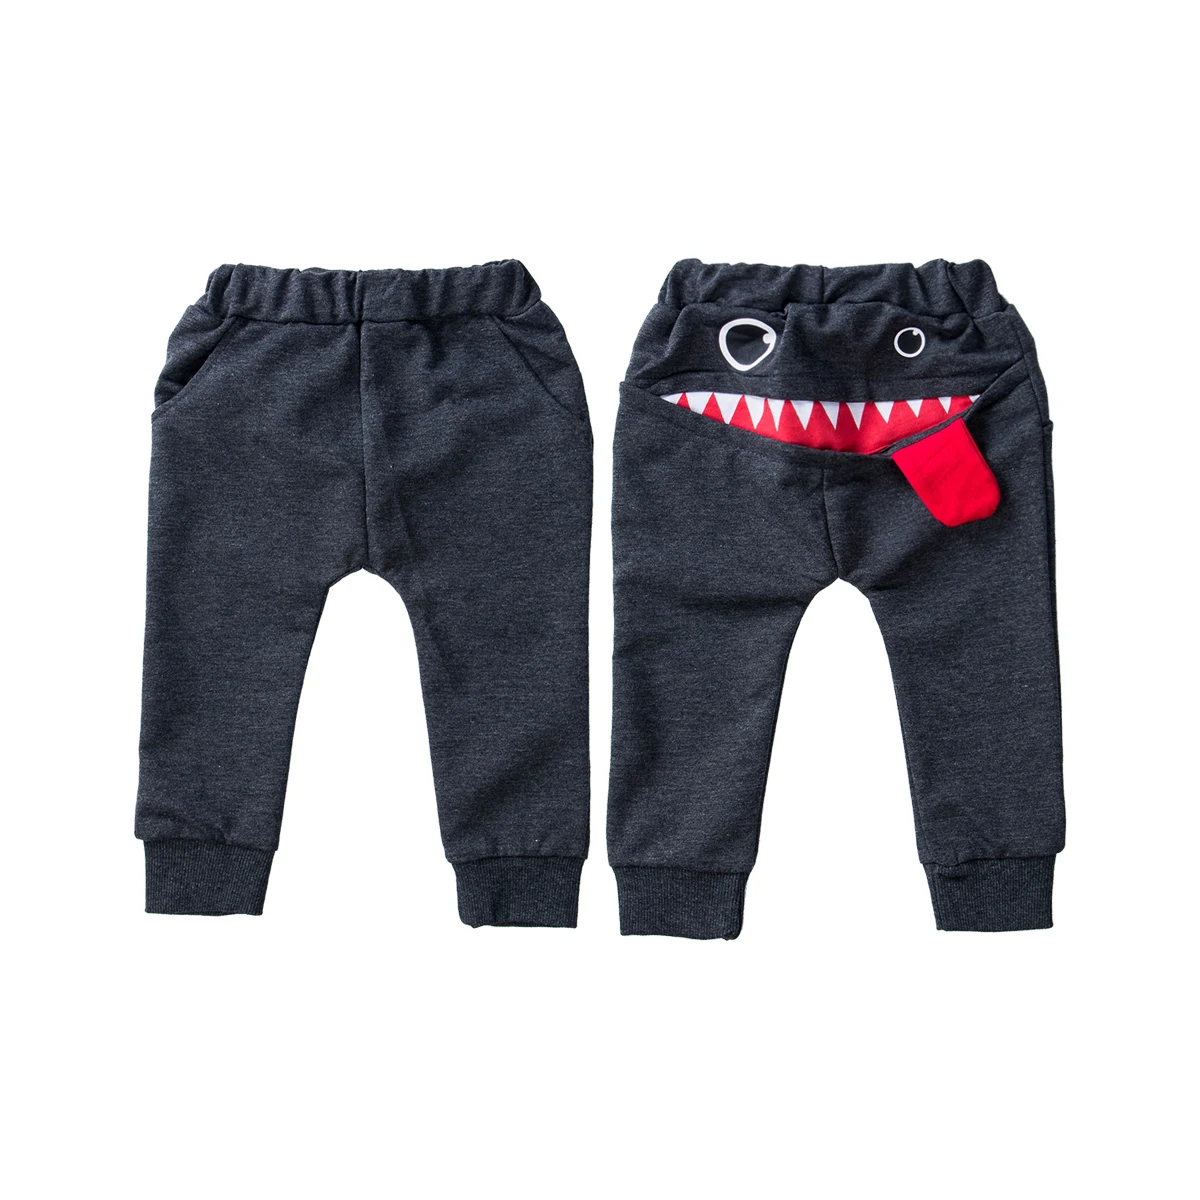 Дети для маленьких мальчиков большой пасть чудовища штаны-шаровары с принтом Нижние штаны Одежда для От 0 до 4 лет